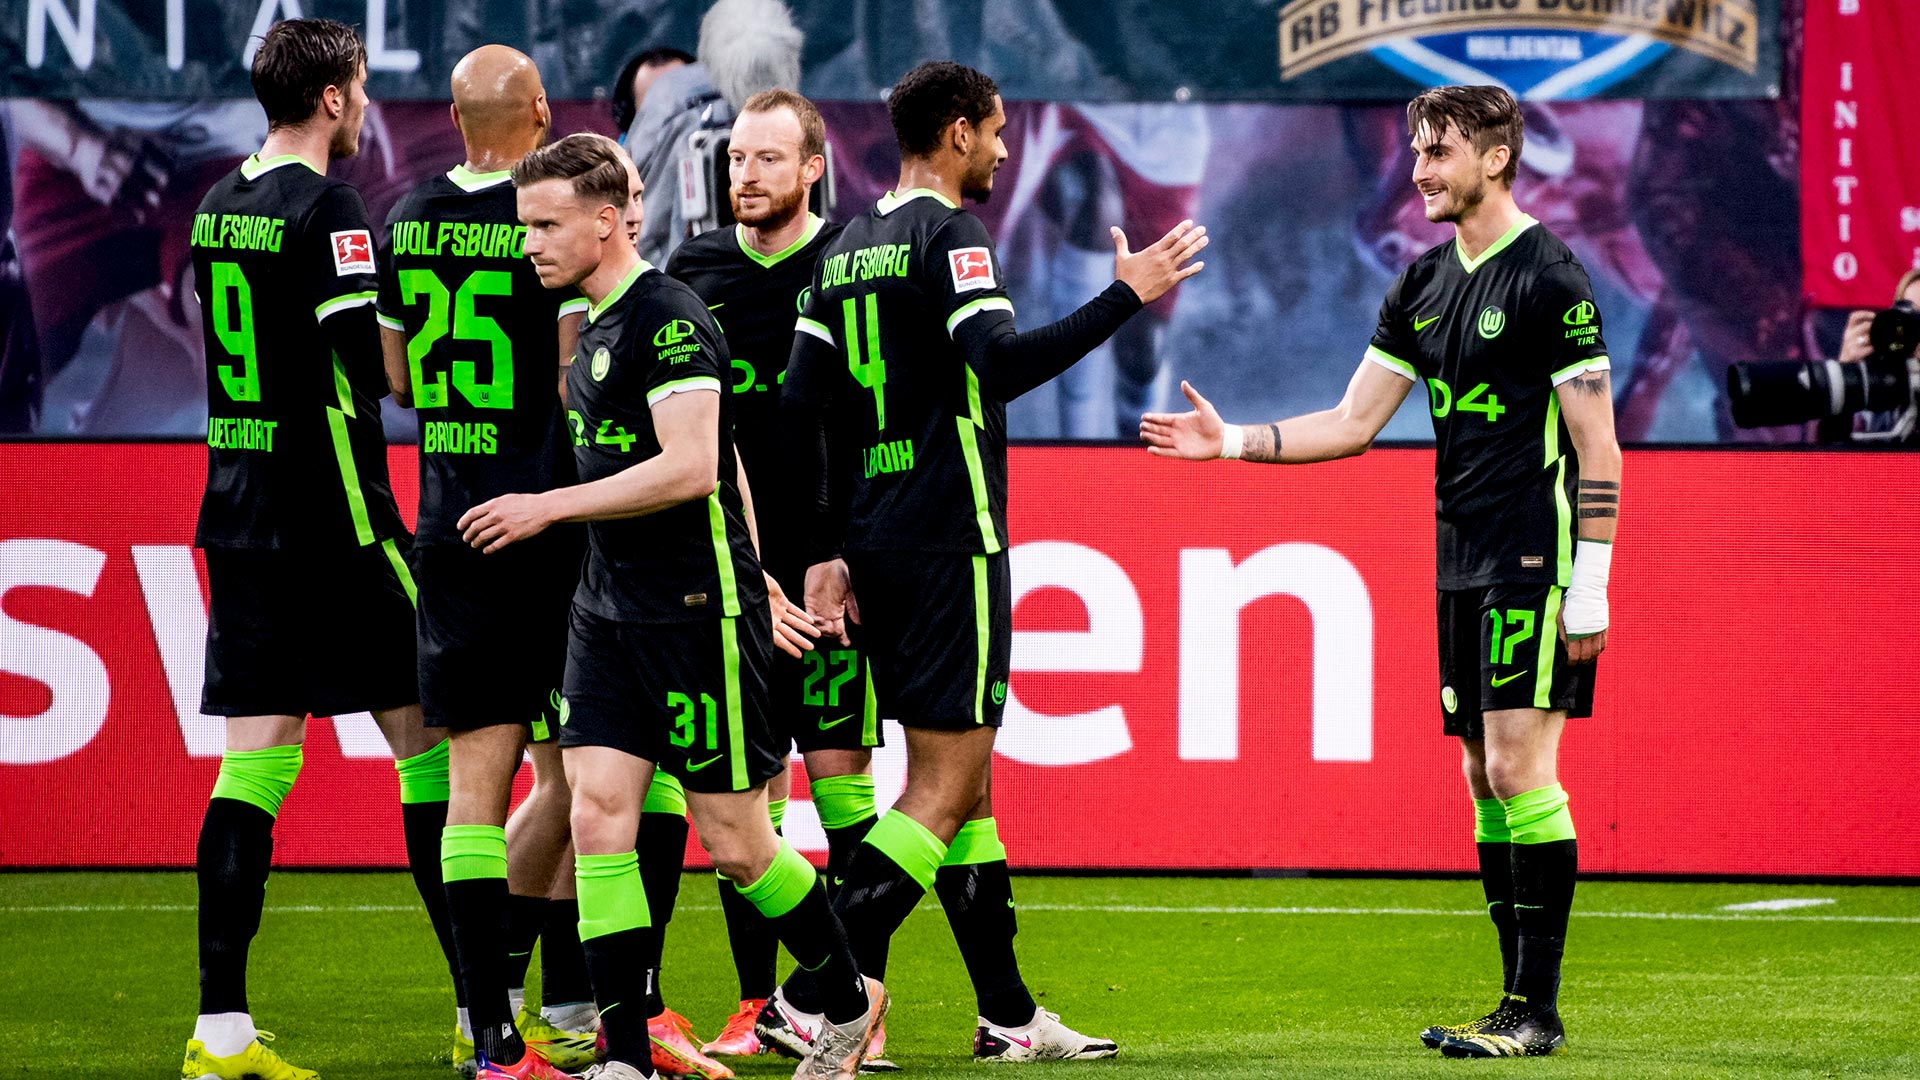 Das Team des VfL Wolfsburg feiert den Einzug in die Champions League.